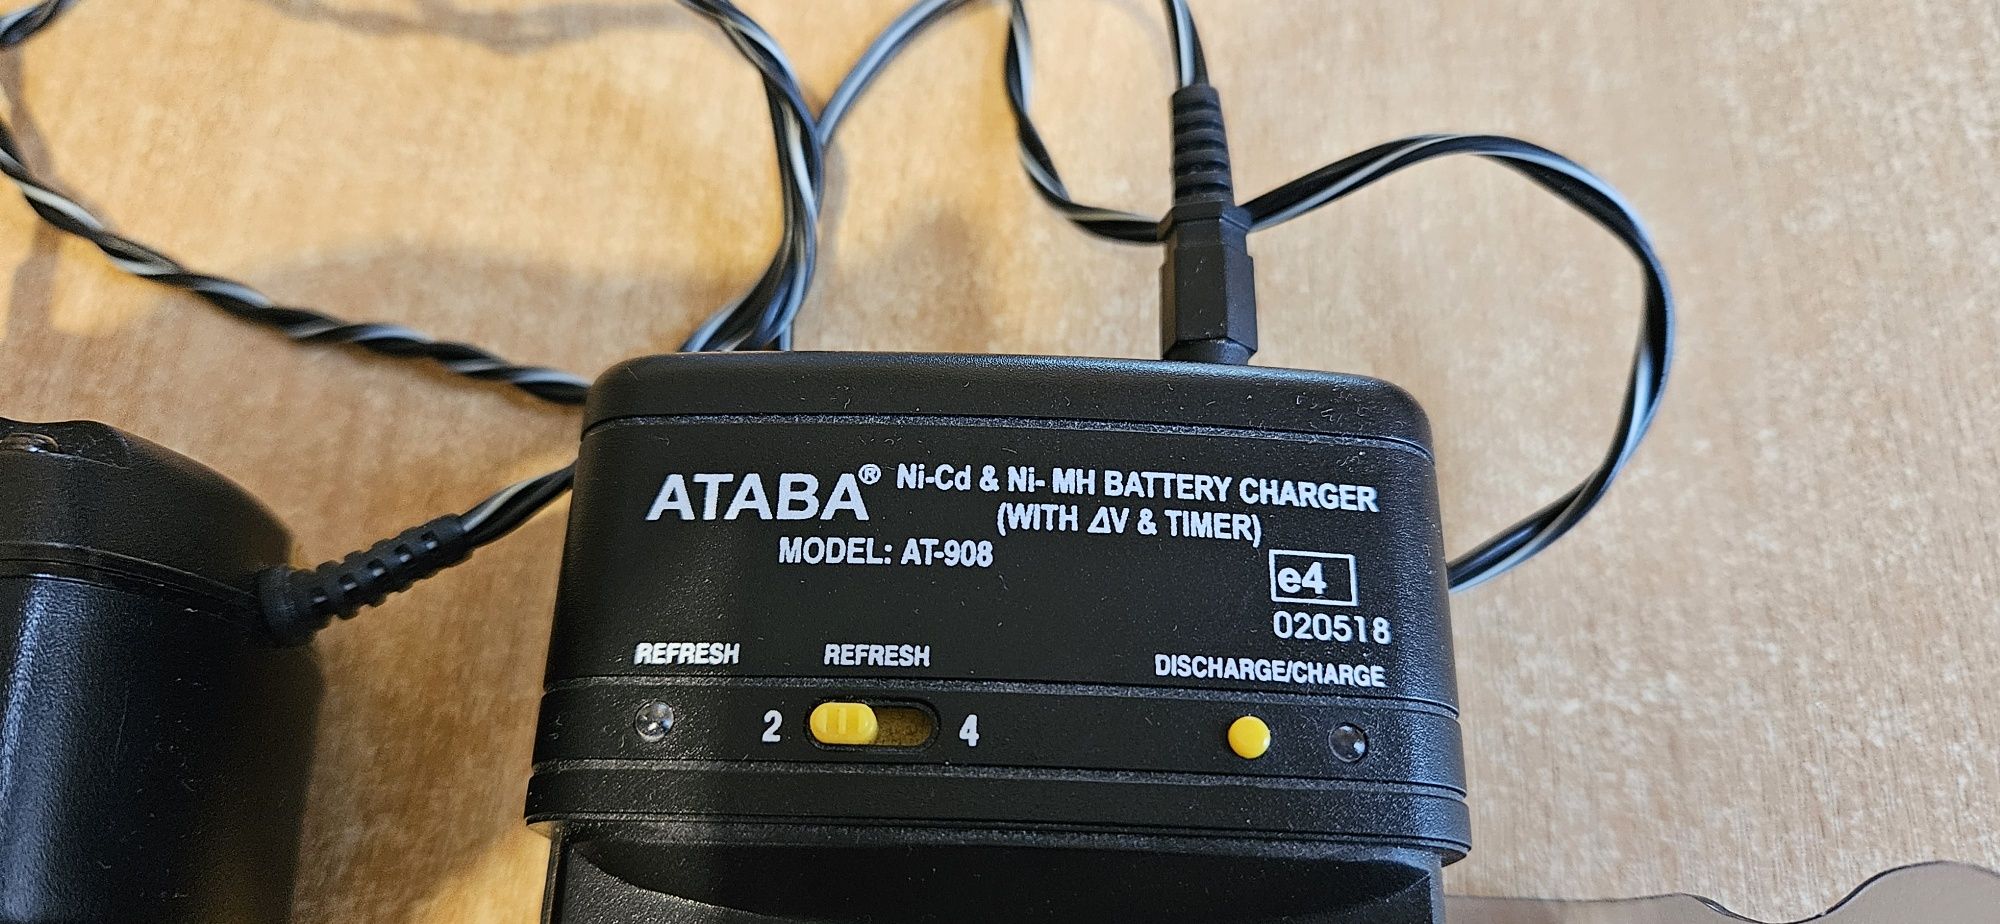 Зарядний пристрій ATABA AT-908 для акумуляторів АА/ААА розміру